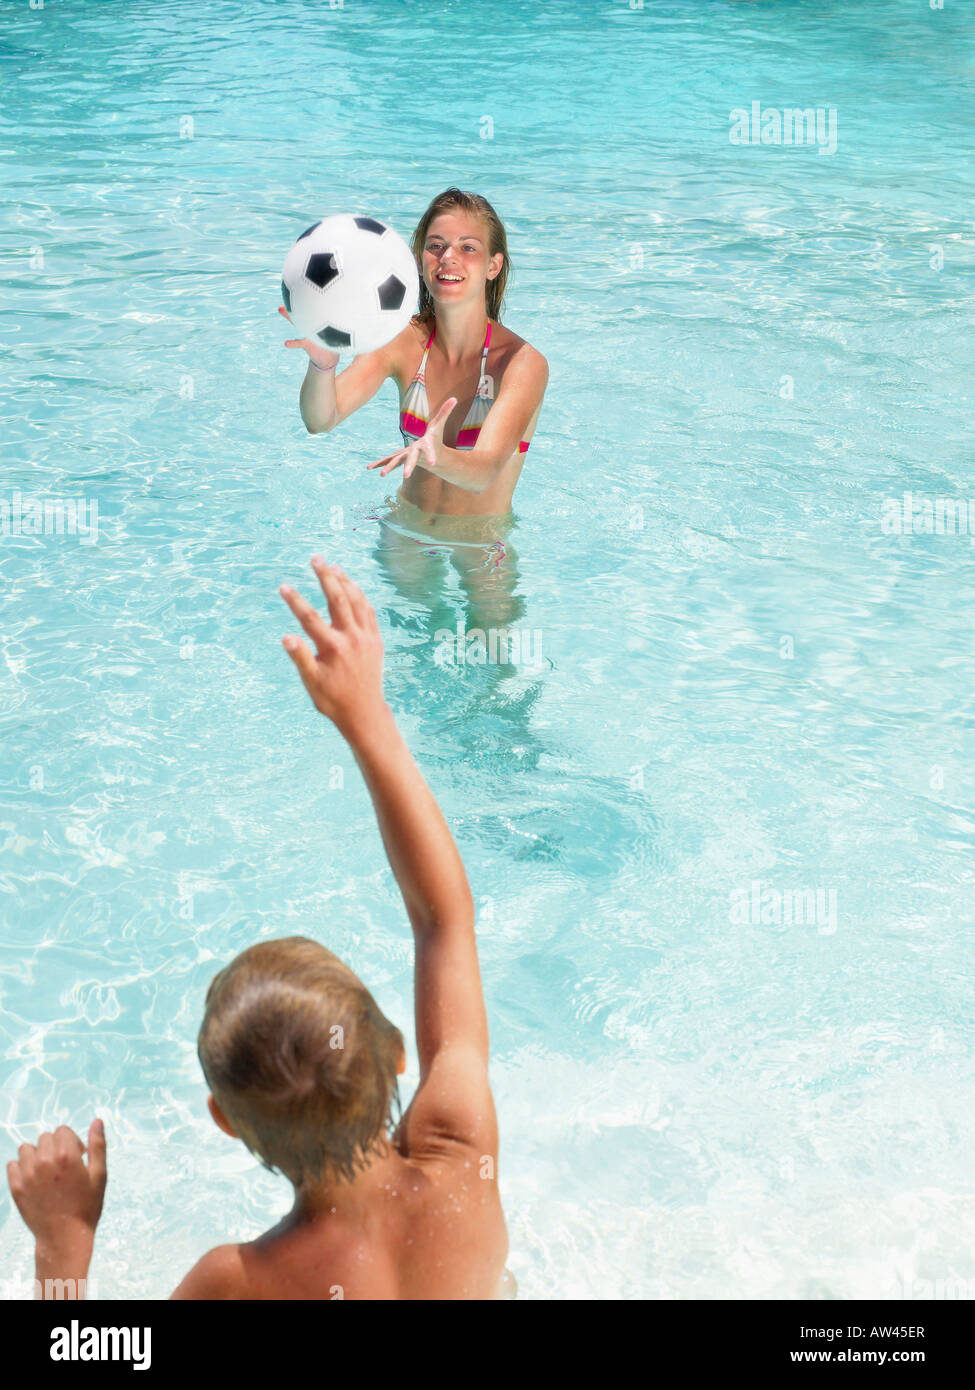 Kinder spielen mit einem Ball im Pool Stockfotografie - Alamy